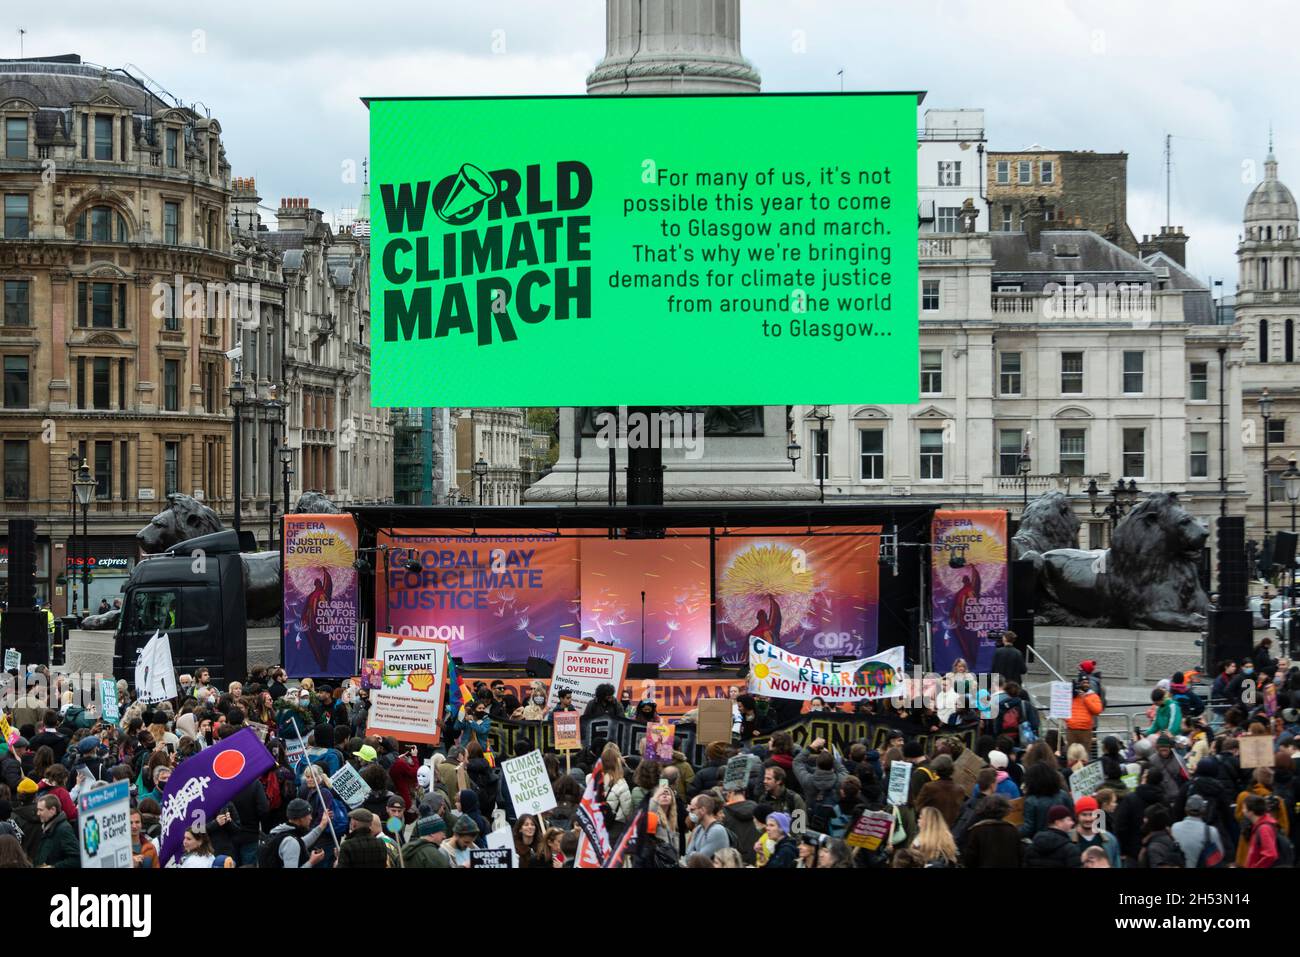 Londres, Royaume-Uni.6 novembre 2021.Les activistes du climat de Trafalgar Square pour un rassemblement dans le cadre de la Journée mondiale d’action pour la justice climatique afin d’exiger des gouvernements et des entreprises qu’ils limitent les températures mondiales à 1.5 °C et qu’ils apportent des solutions réelles et justes à la crise climatique.Cet événement, et d'autres événements dans le monde entier, coïncide avec la Conférence des Nations Unies sur les changements climatiques (COP26) qui se tient à Glasgow.Credit: Stephen Chung / Alamy Live News Banque D'Images